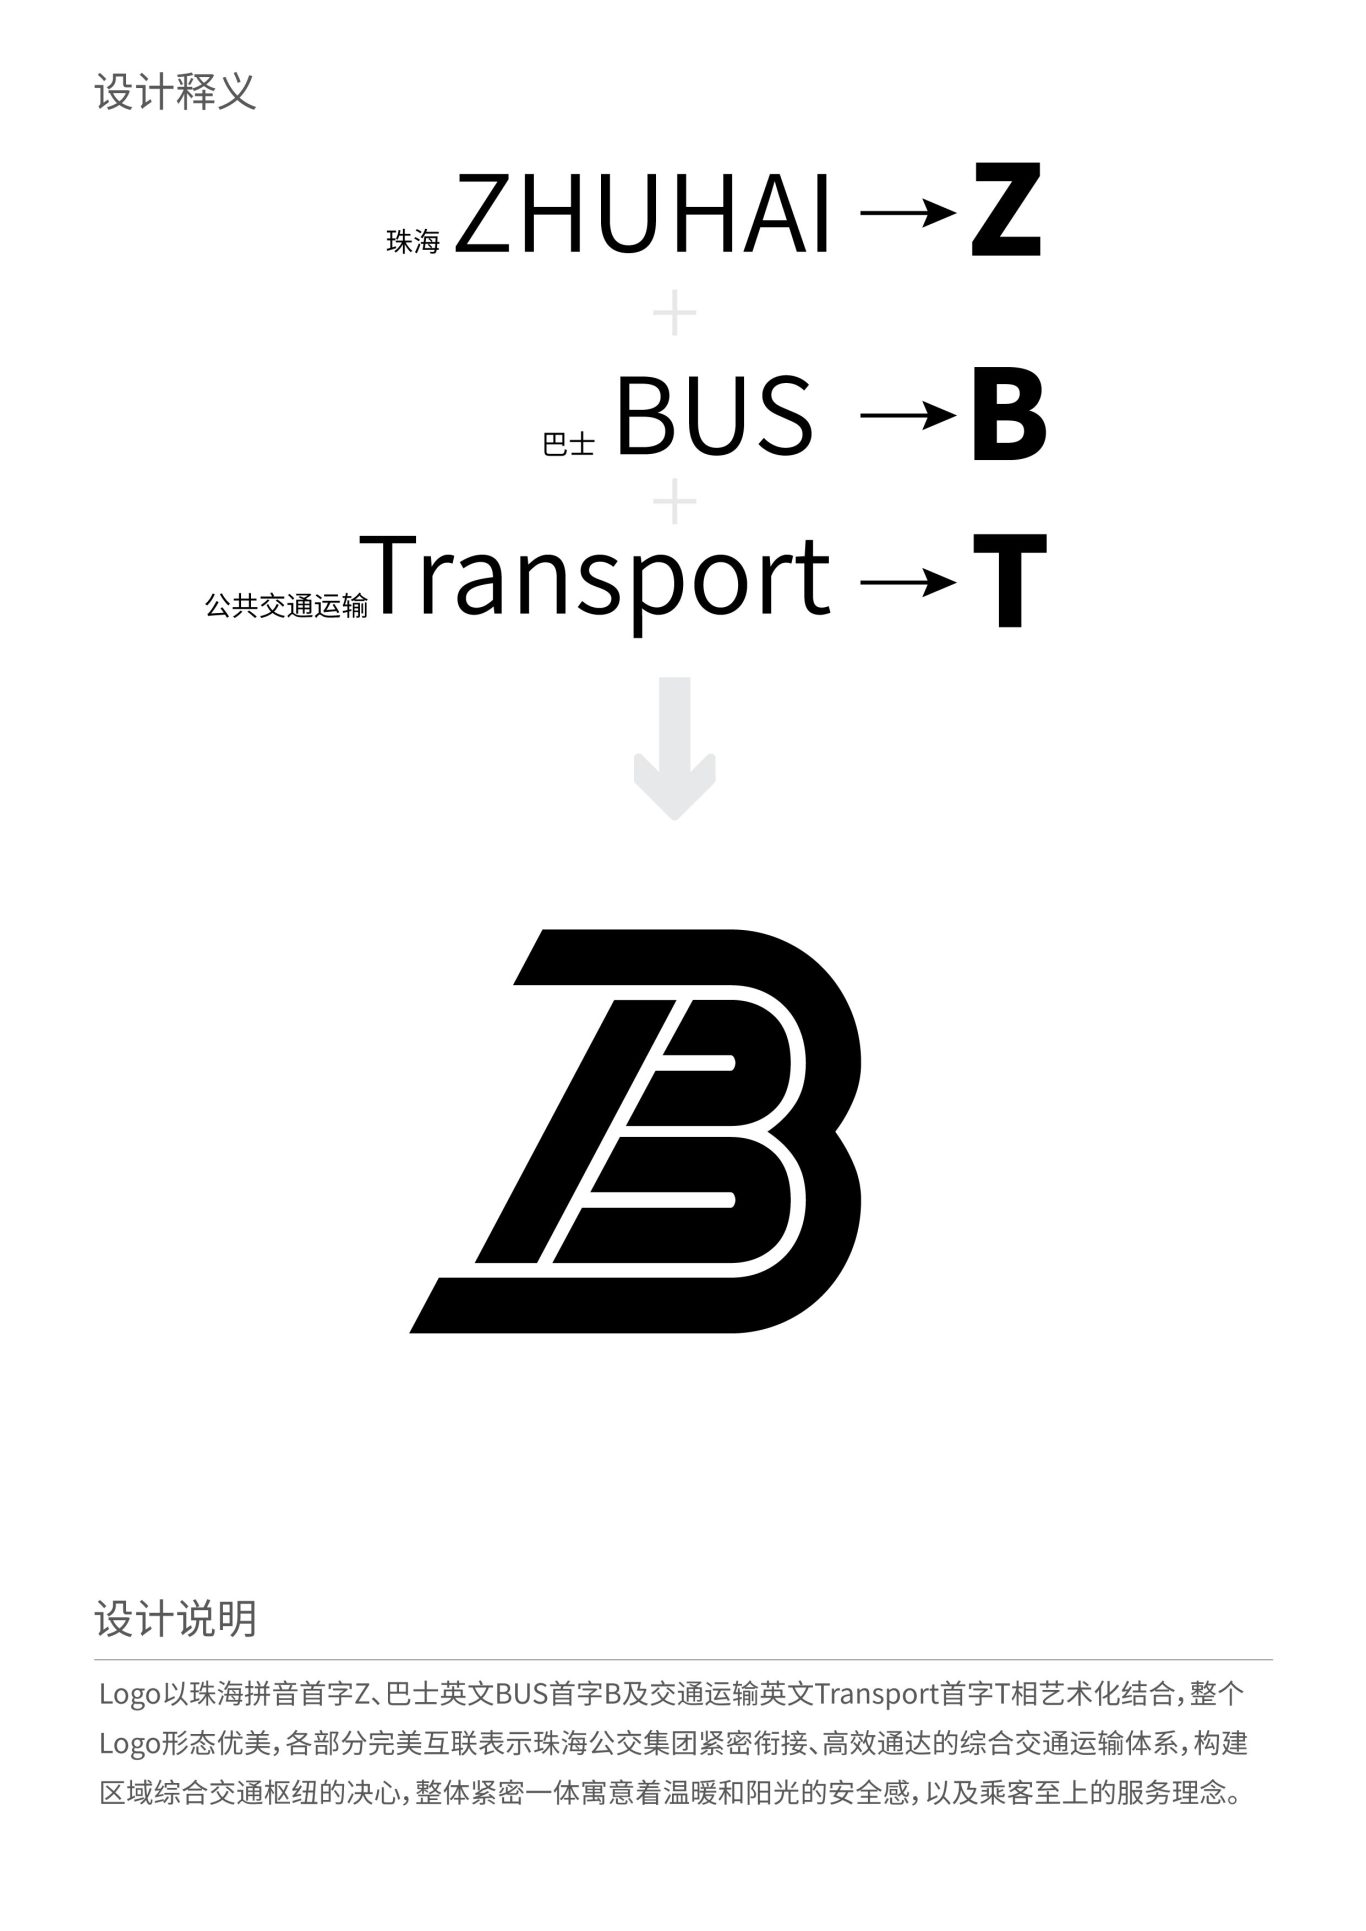 珠海公交巴士logo設計圖1